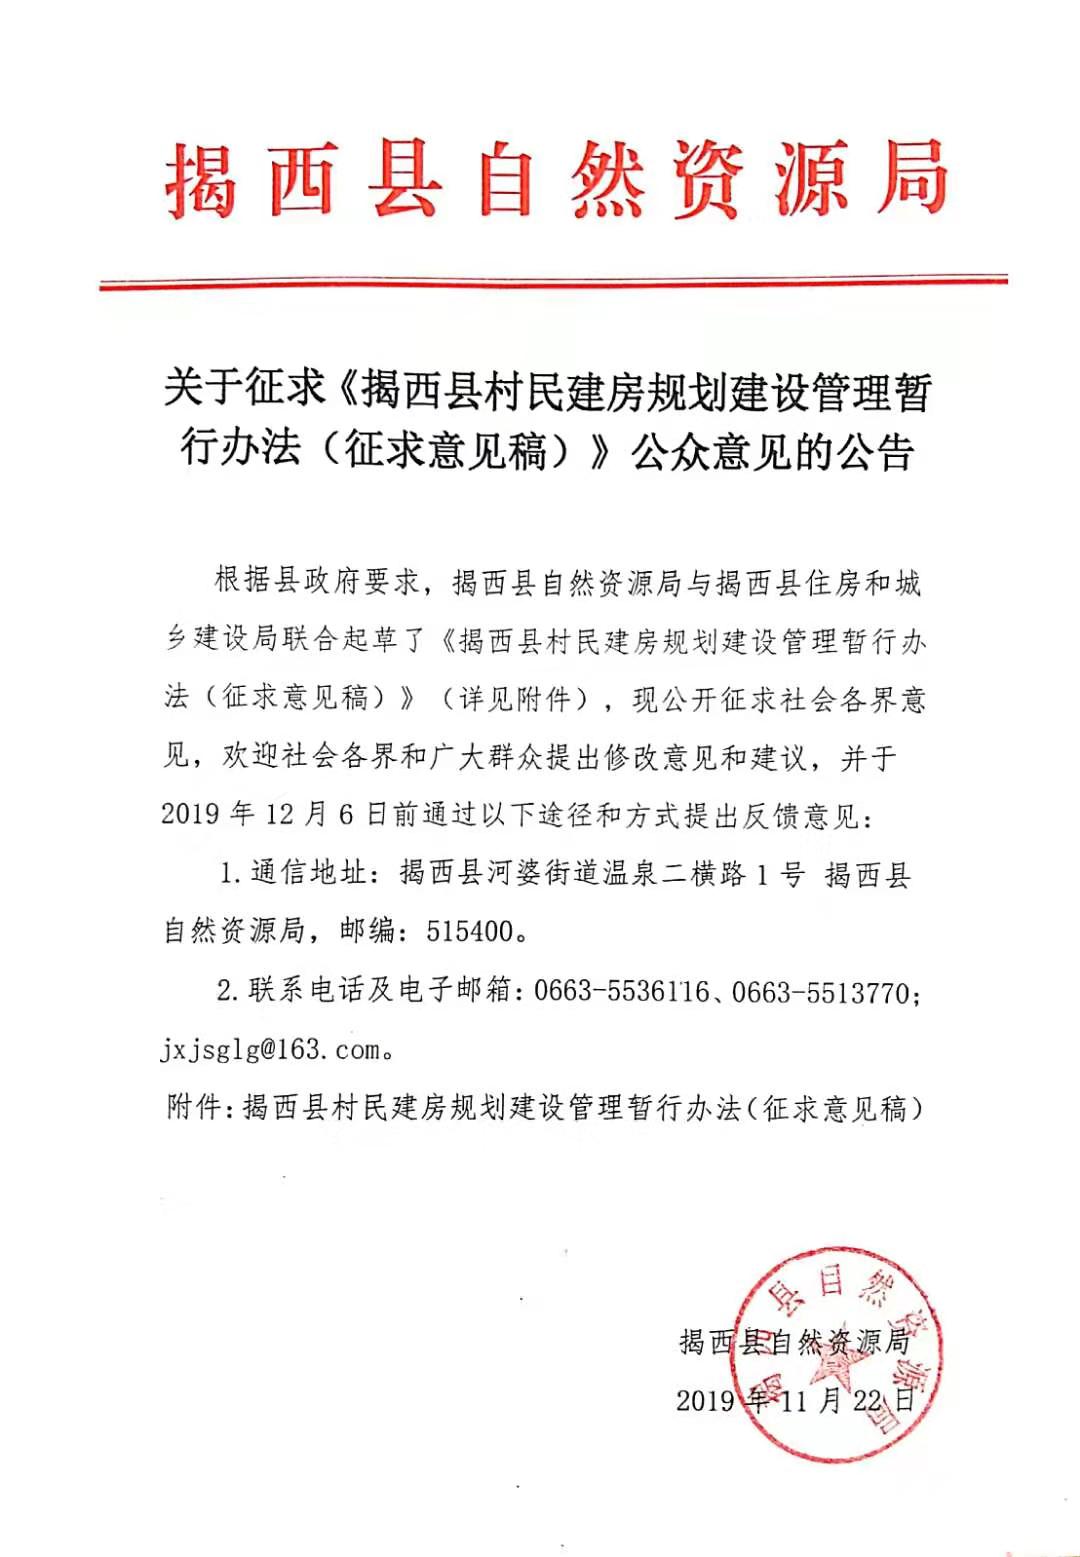 关于征求《揭西县村民建房规划建设管理暂行办法（征求意见稿）》公众意见的公告.jpg